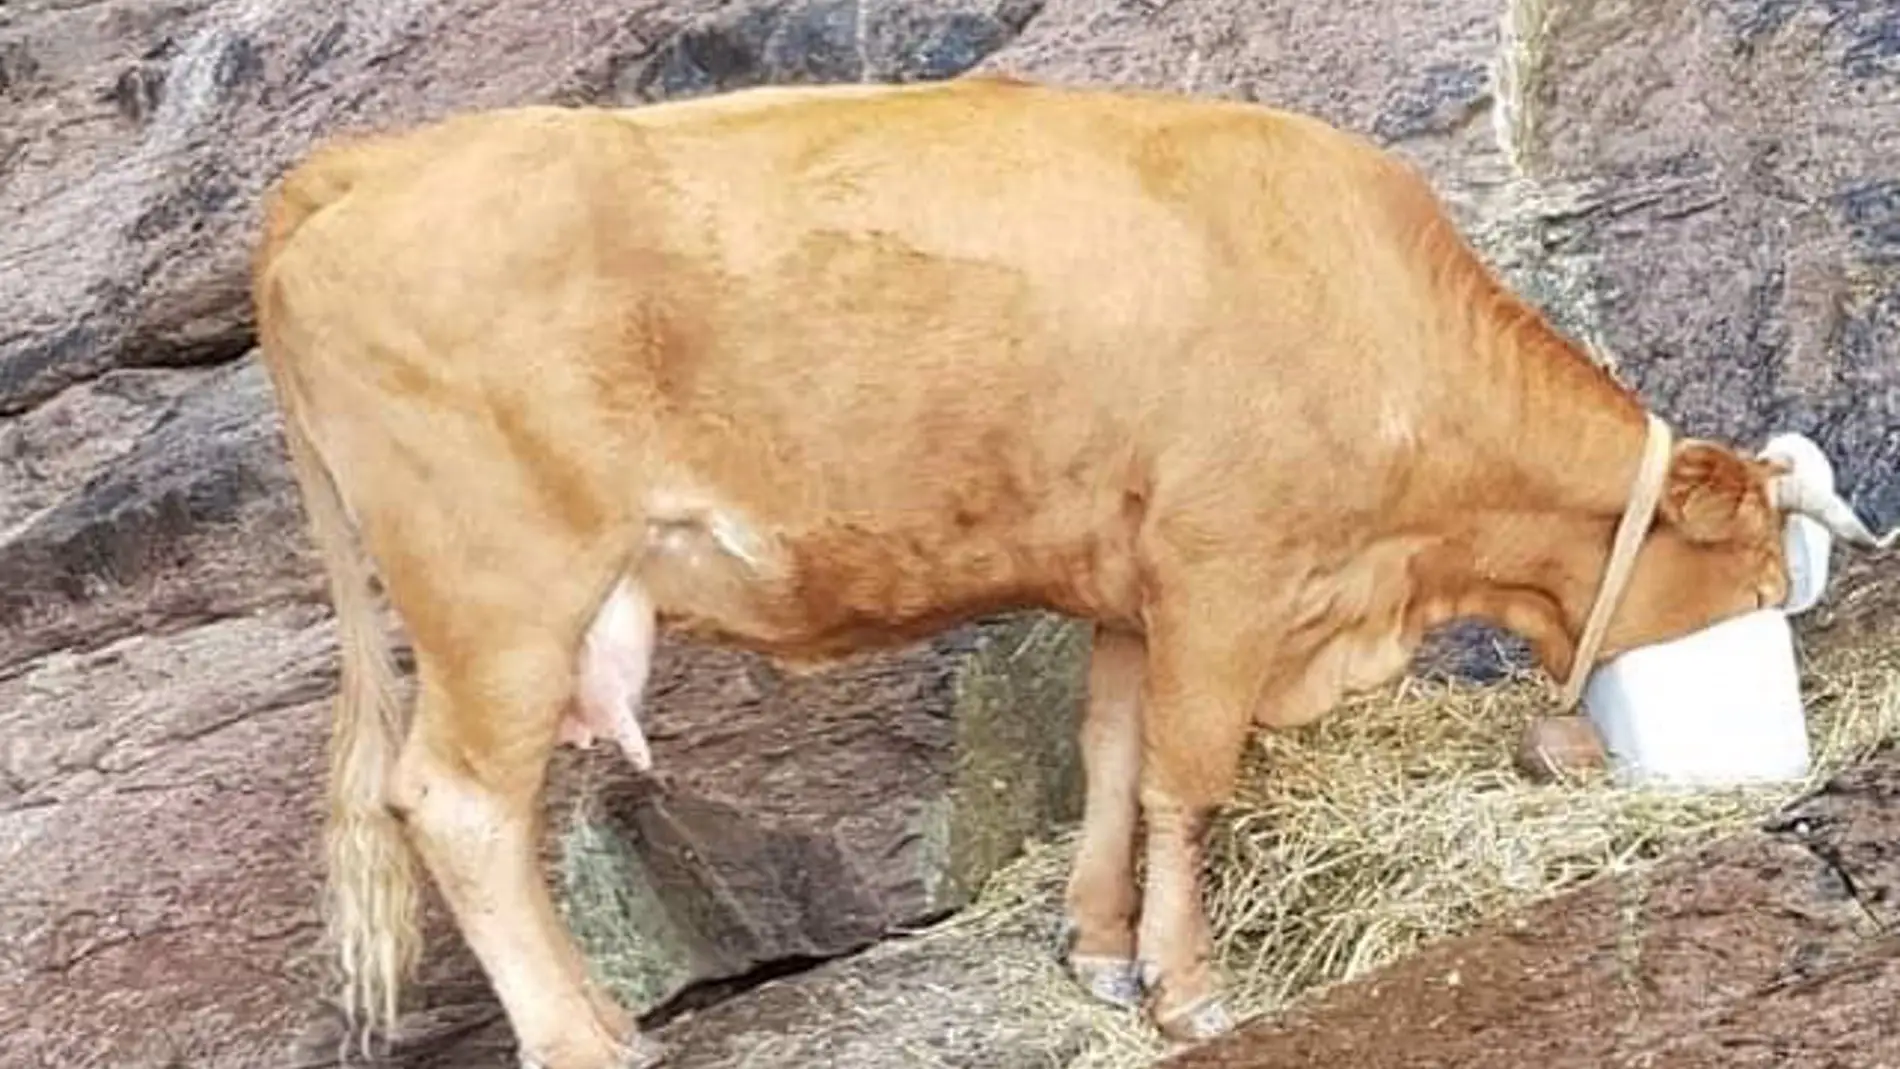 Huellas Cantabria alerta de una vaca atrapada desde hace una semana en una zona rocosa de Laredo